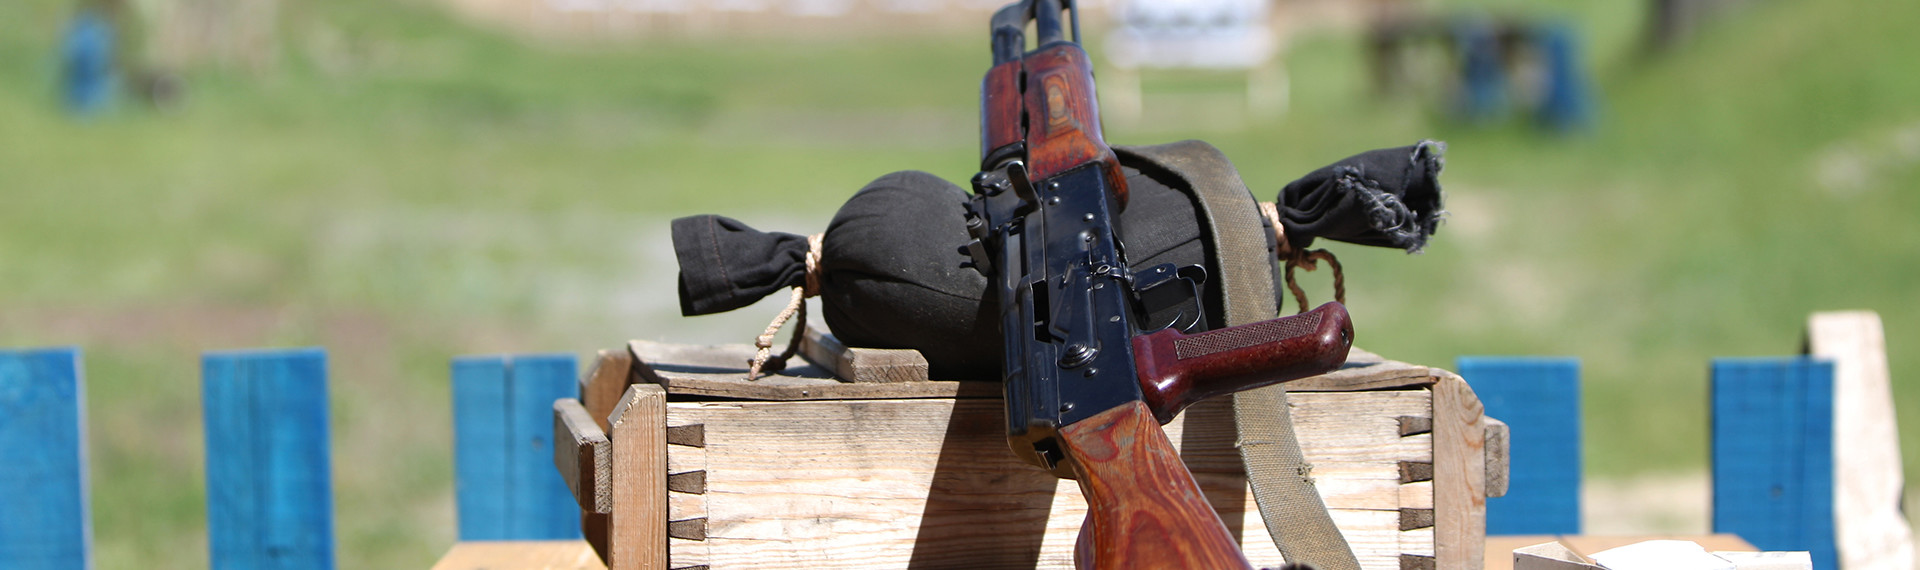 AK-47 Skydning - Prøv kræfter med det smukke bæst AK-47